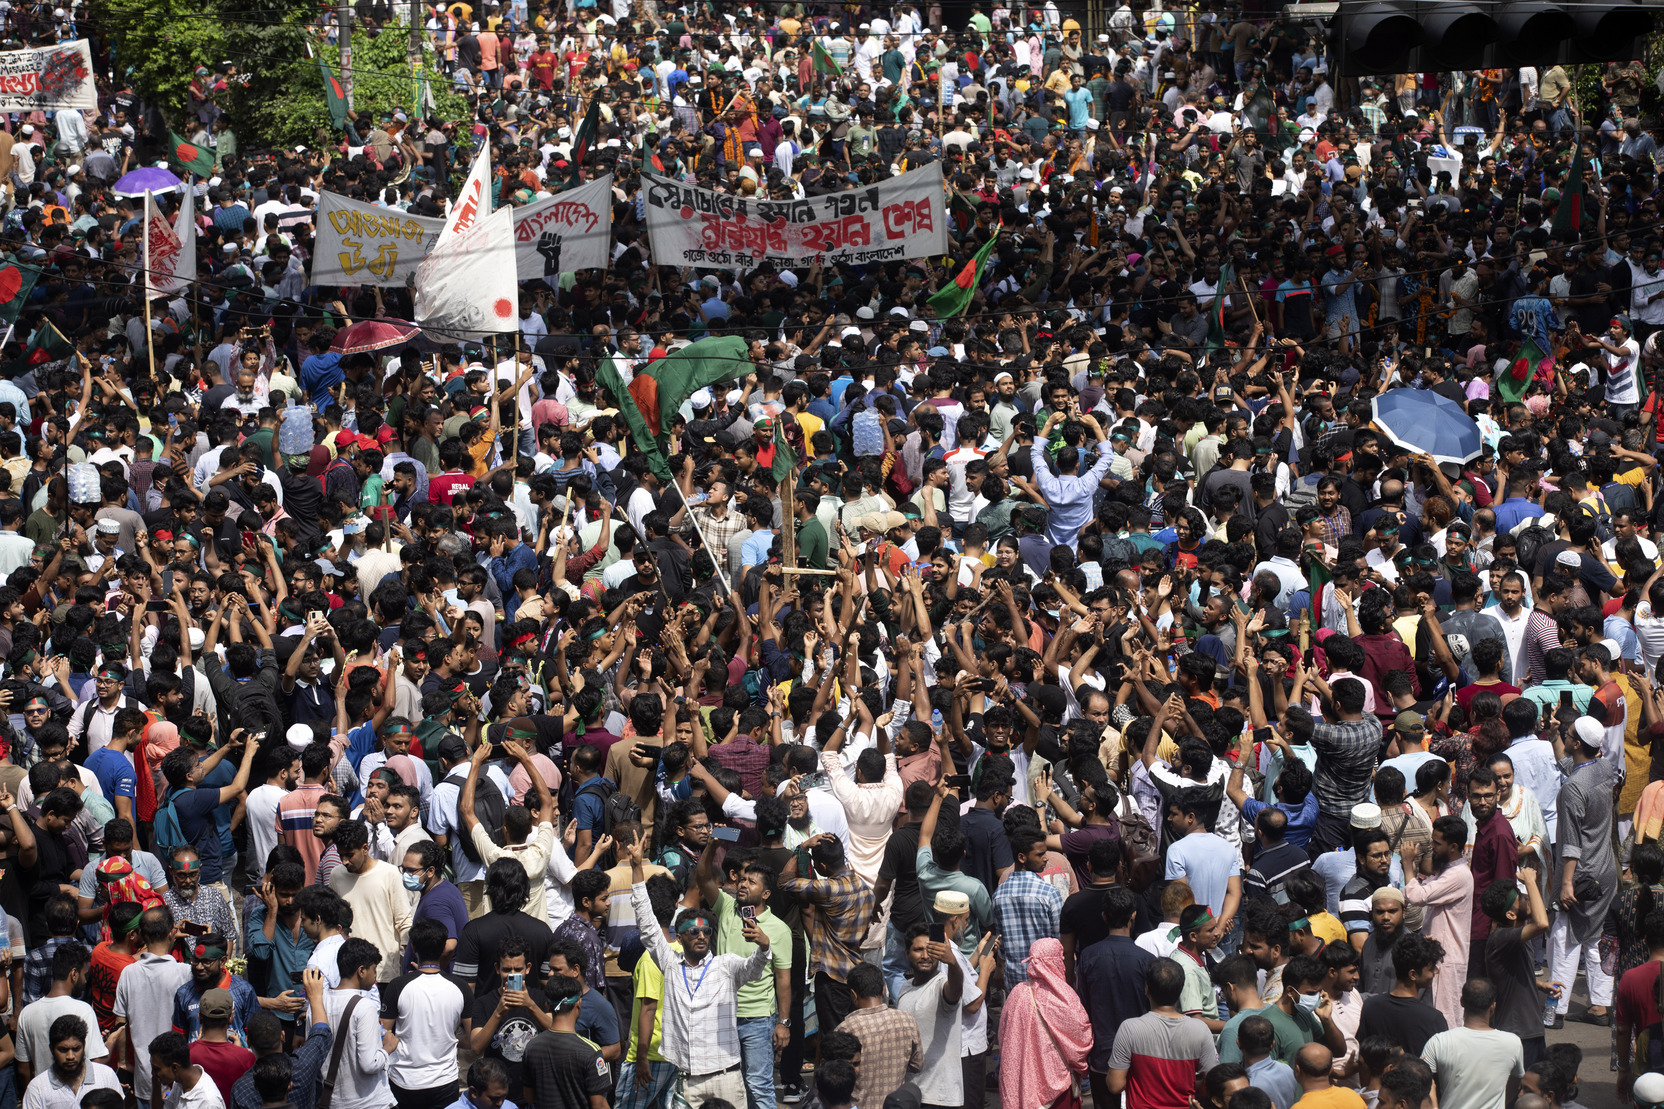 СМИ: Заключенные сбежали из горящей тюрьмы в ходе беспорядков в Бангладеш